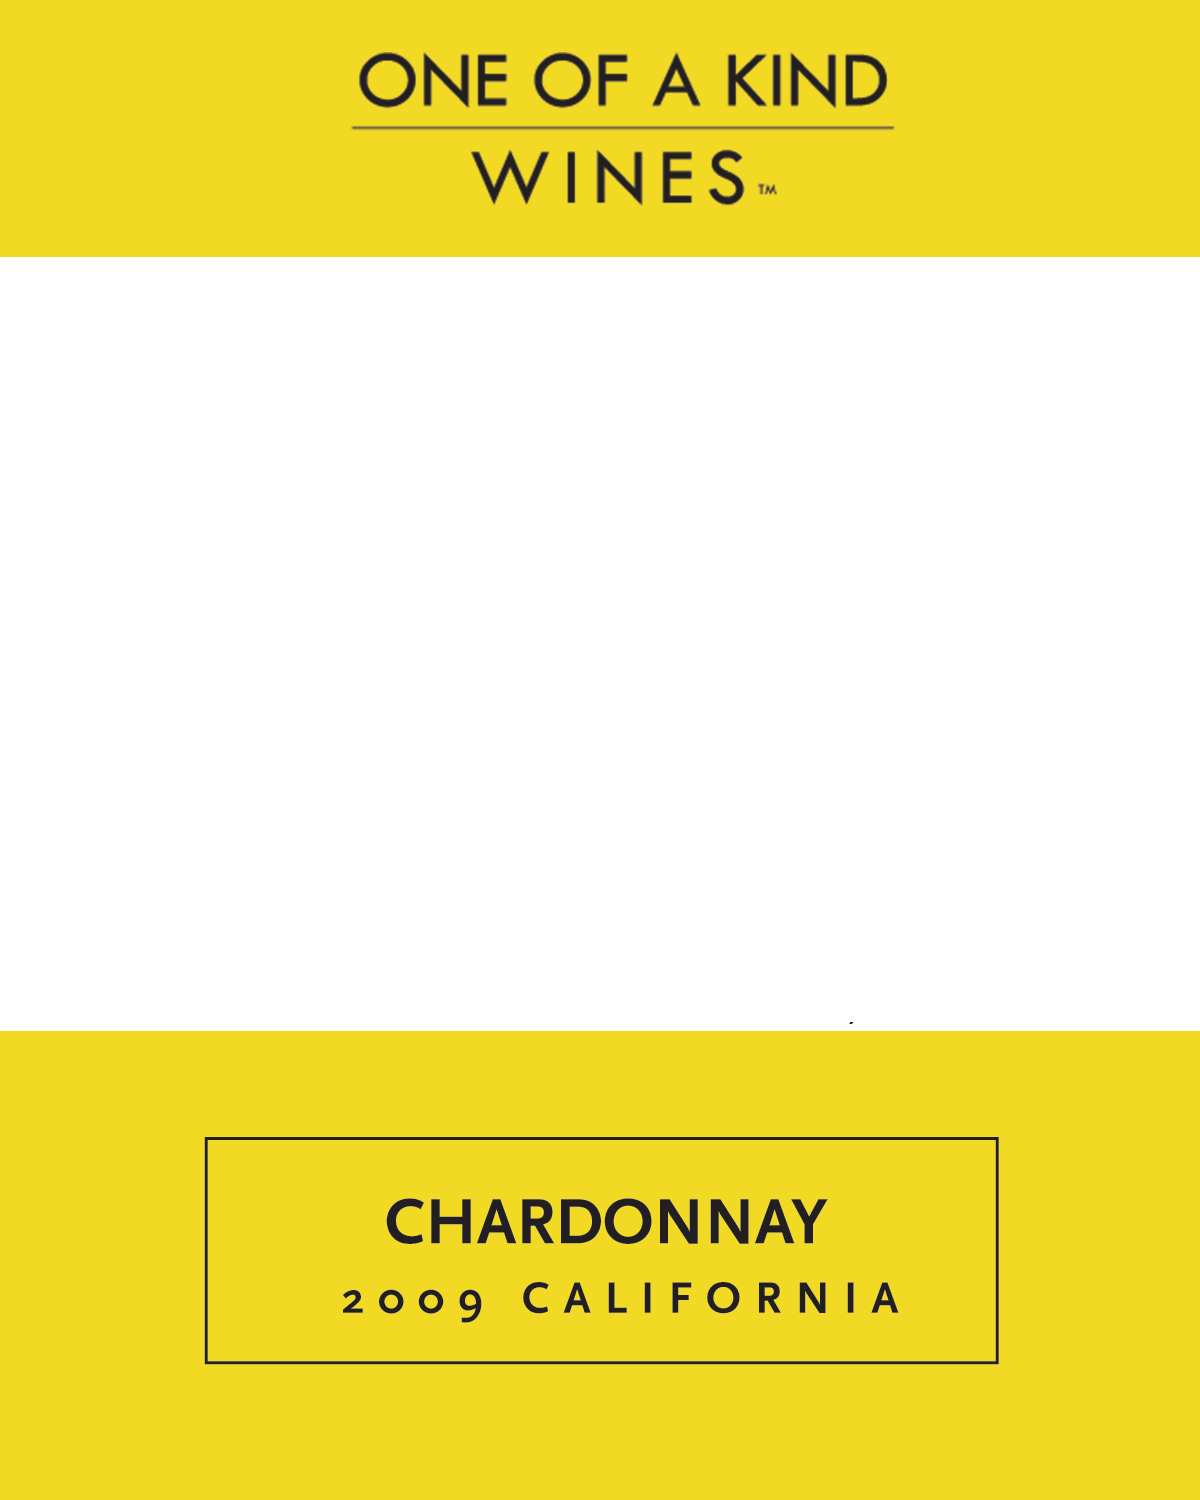 2009 Chardonnay